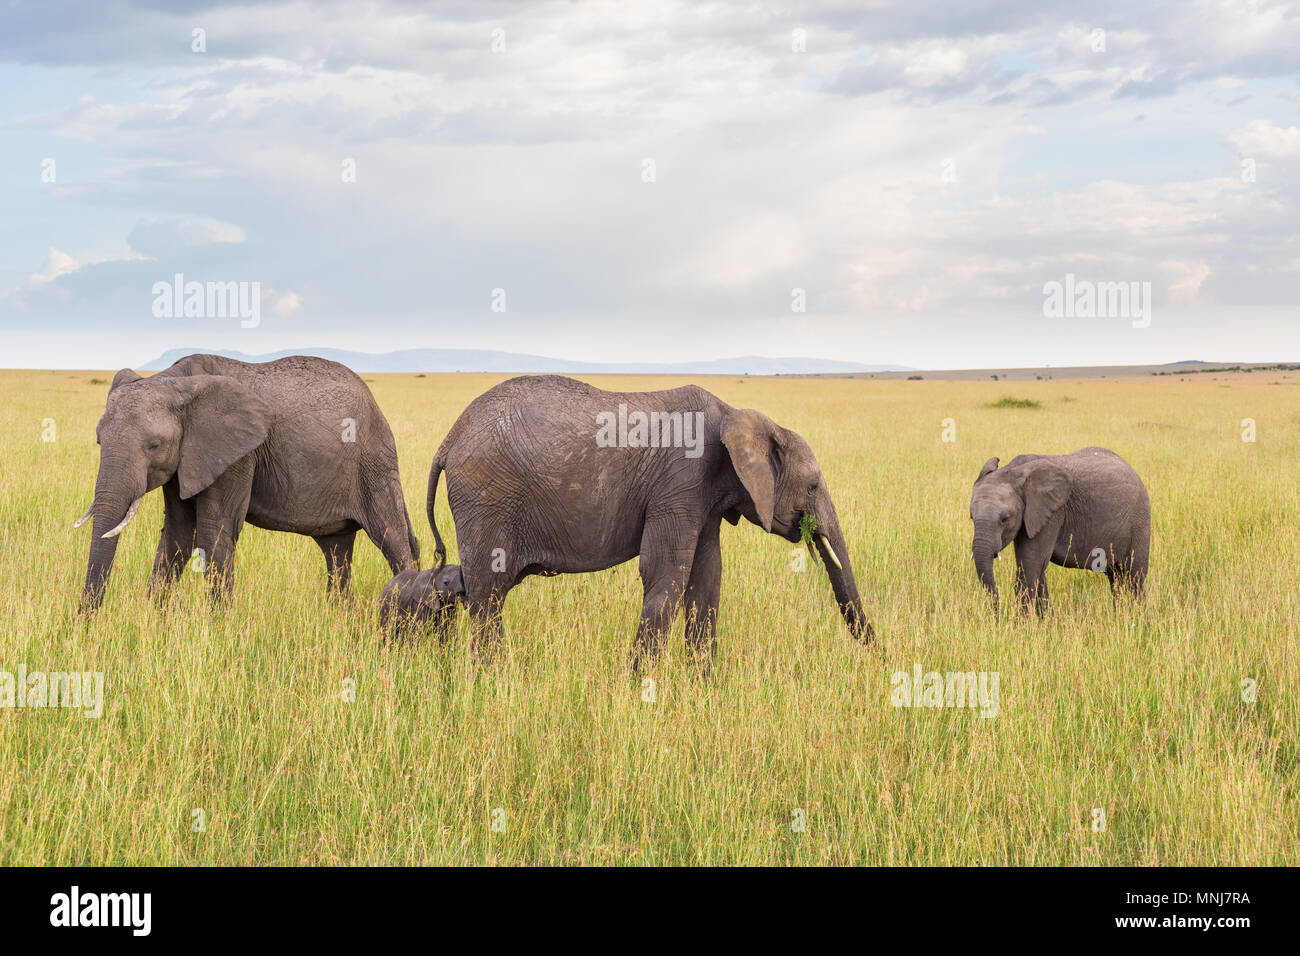 Elephant family with a little calf on the savanna Stock Photo